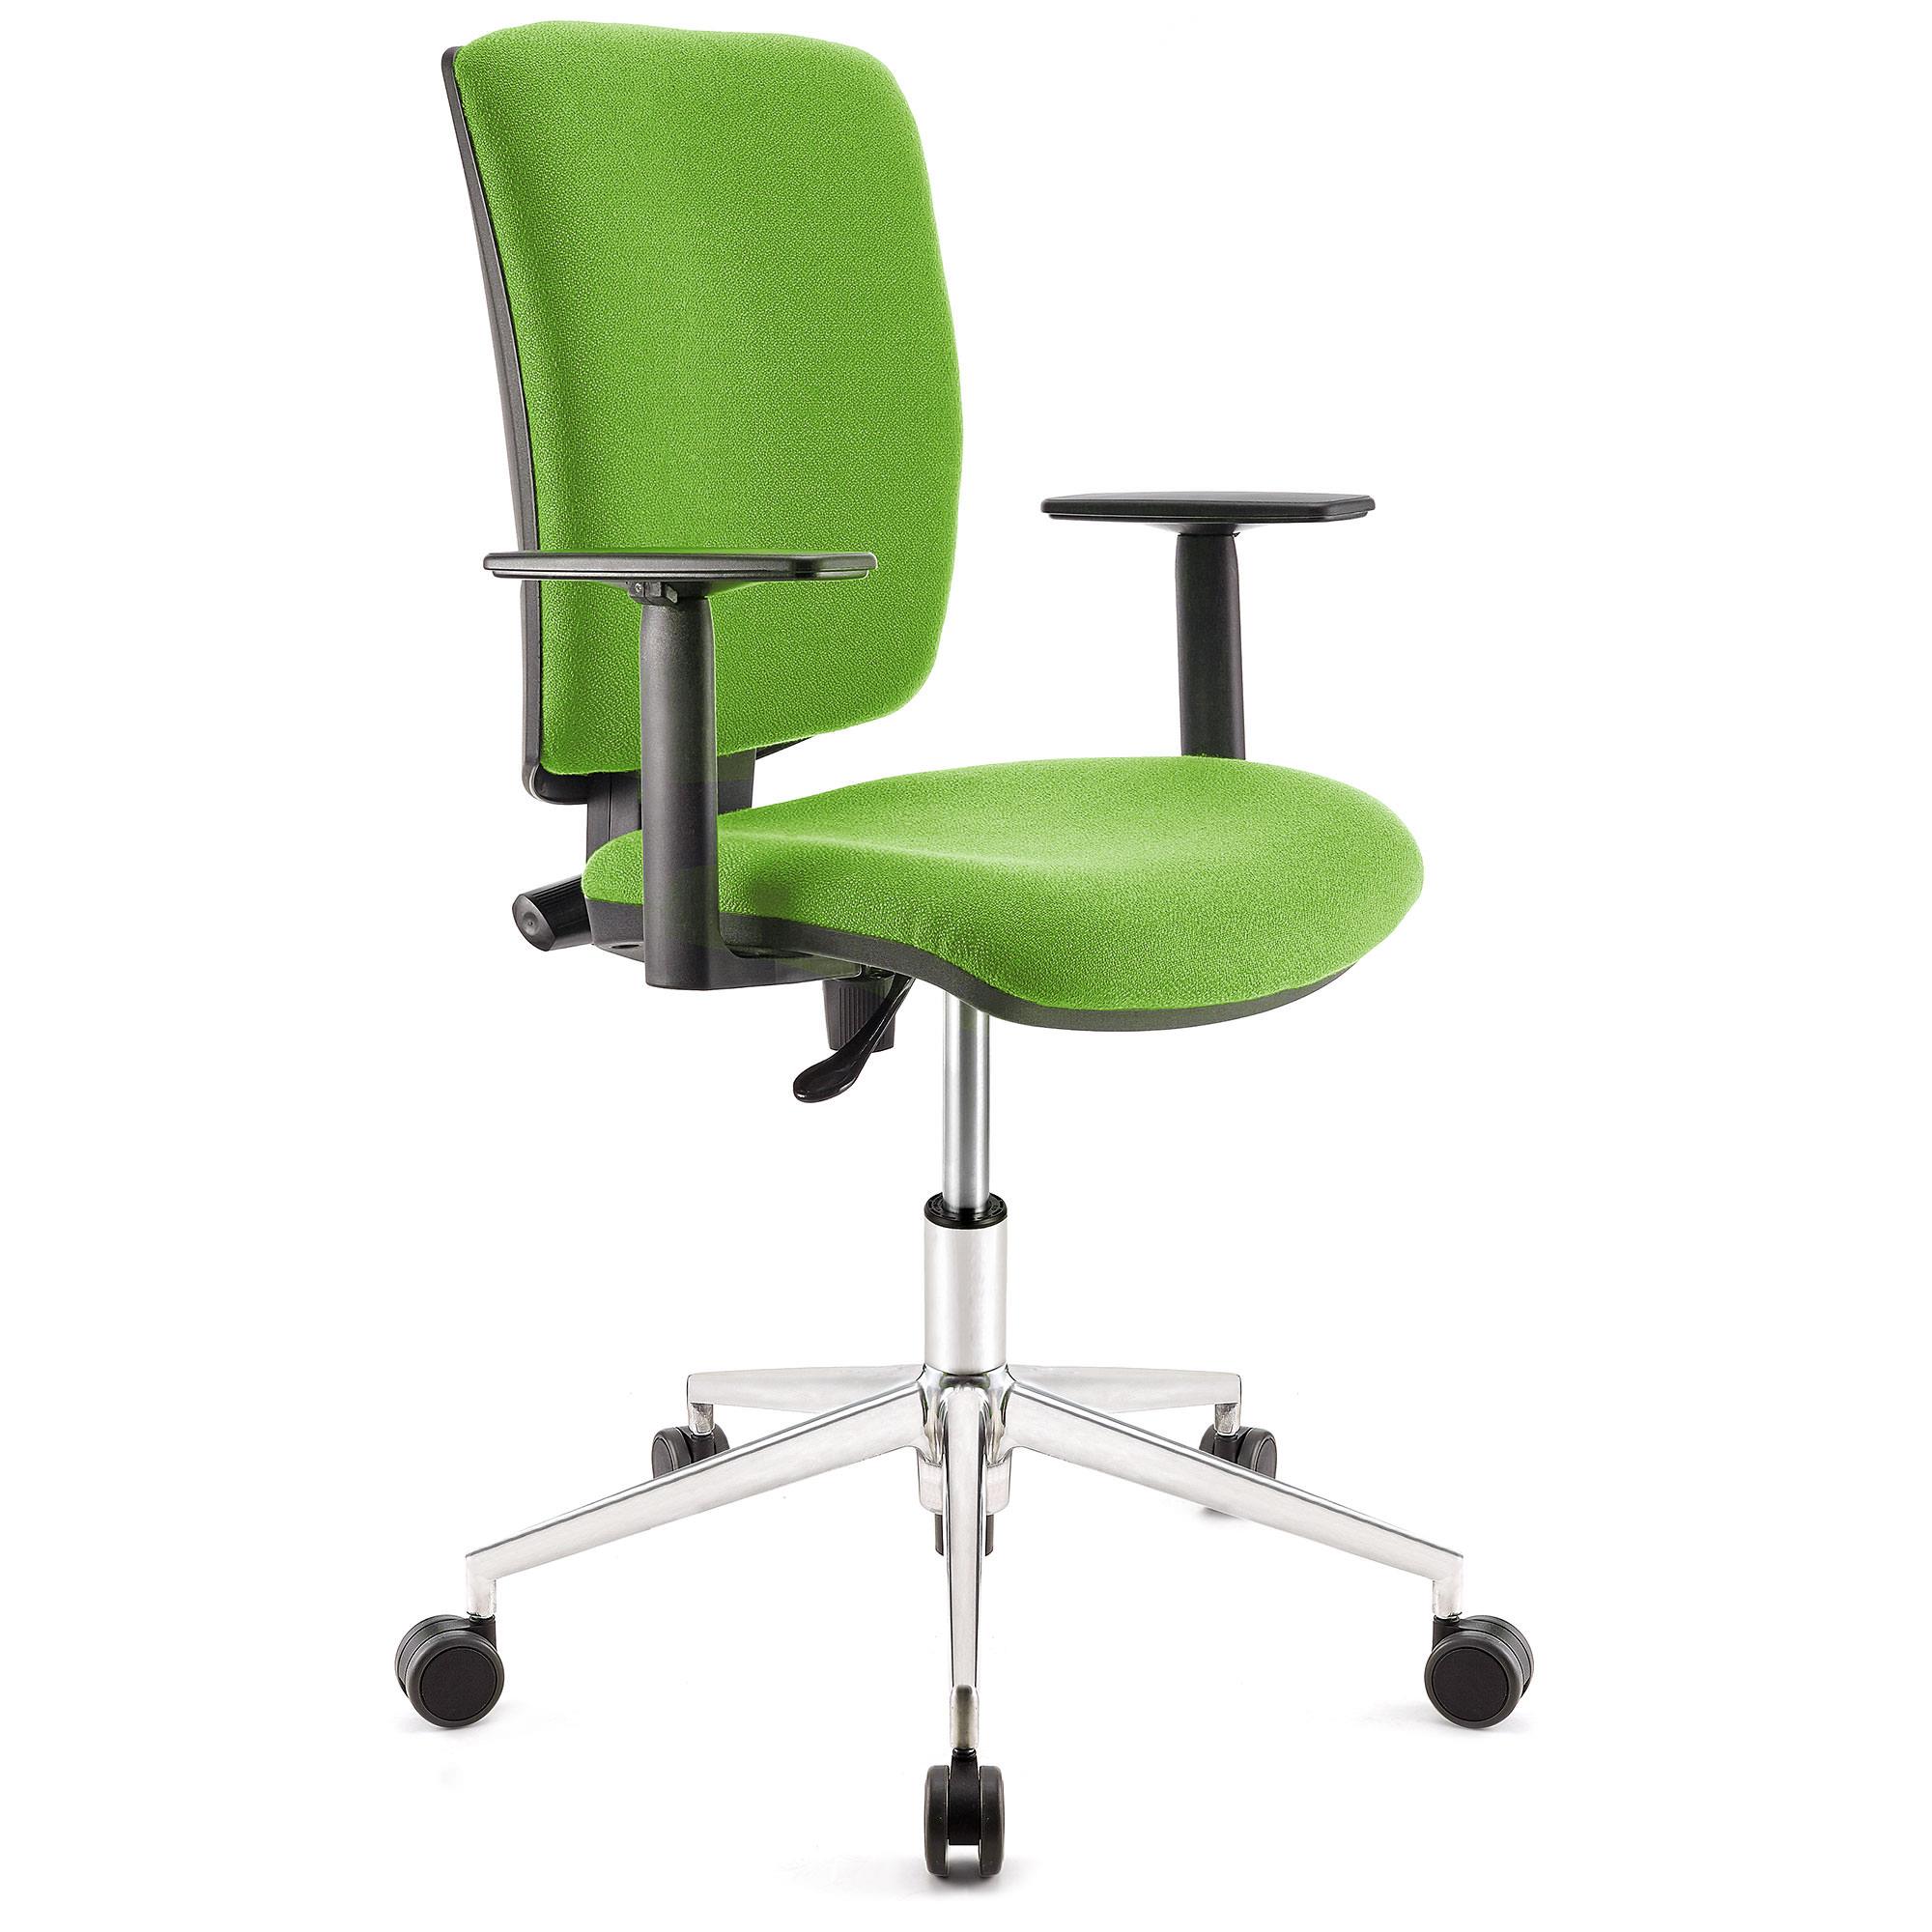 Bürostuhl ATLAS PRO STOFF, verstellbare Rücken- und Armlehnen, Metallfußkreuz, Farbe Limettengrün